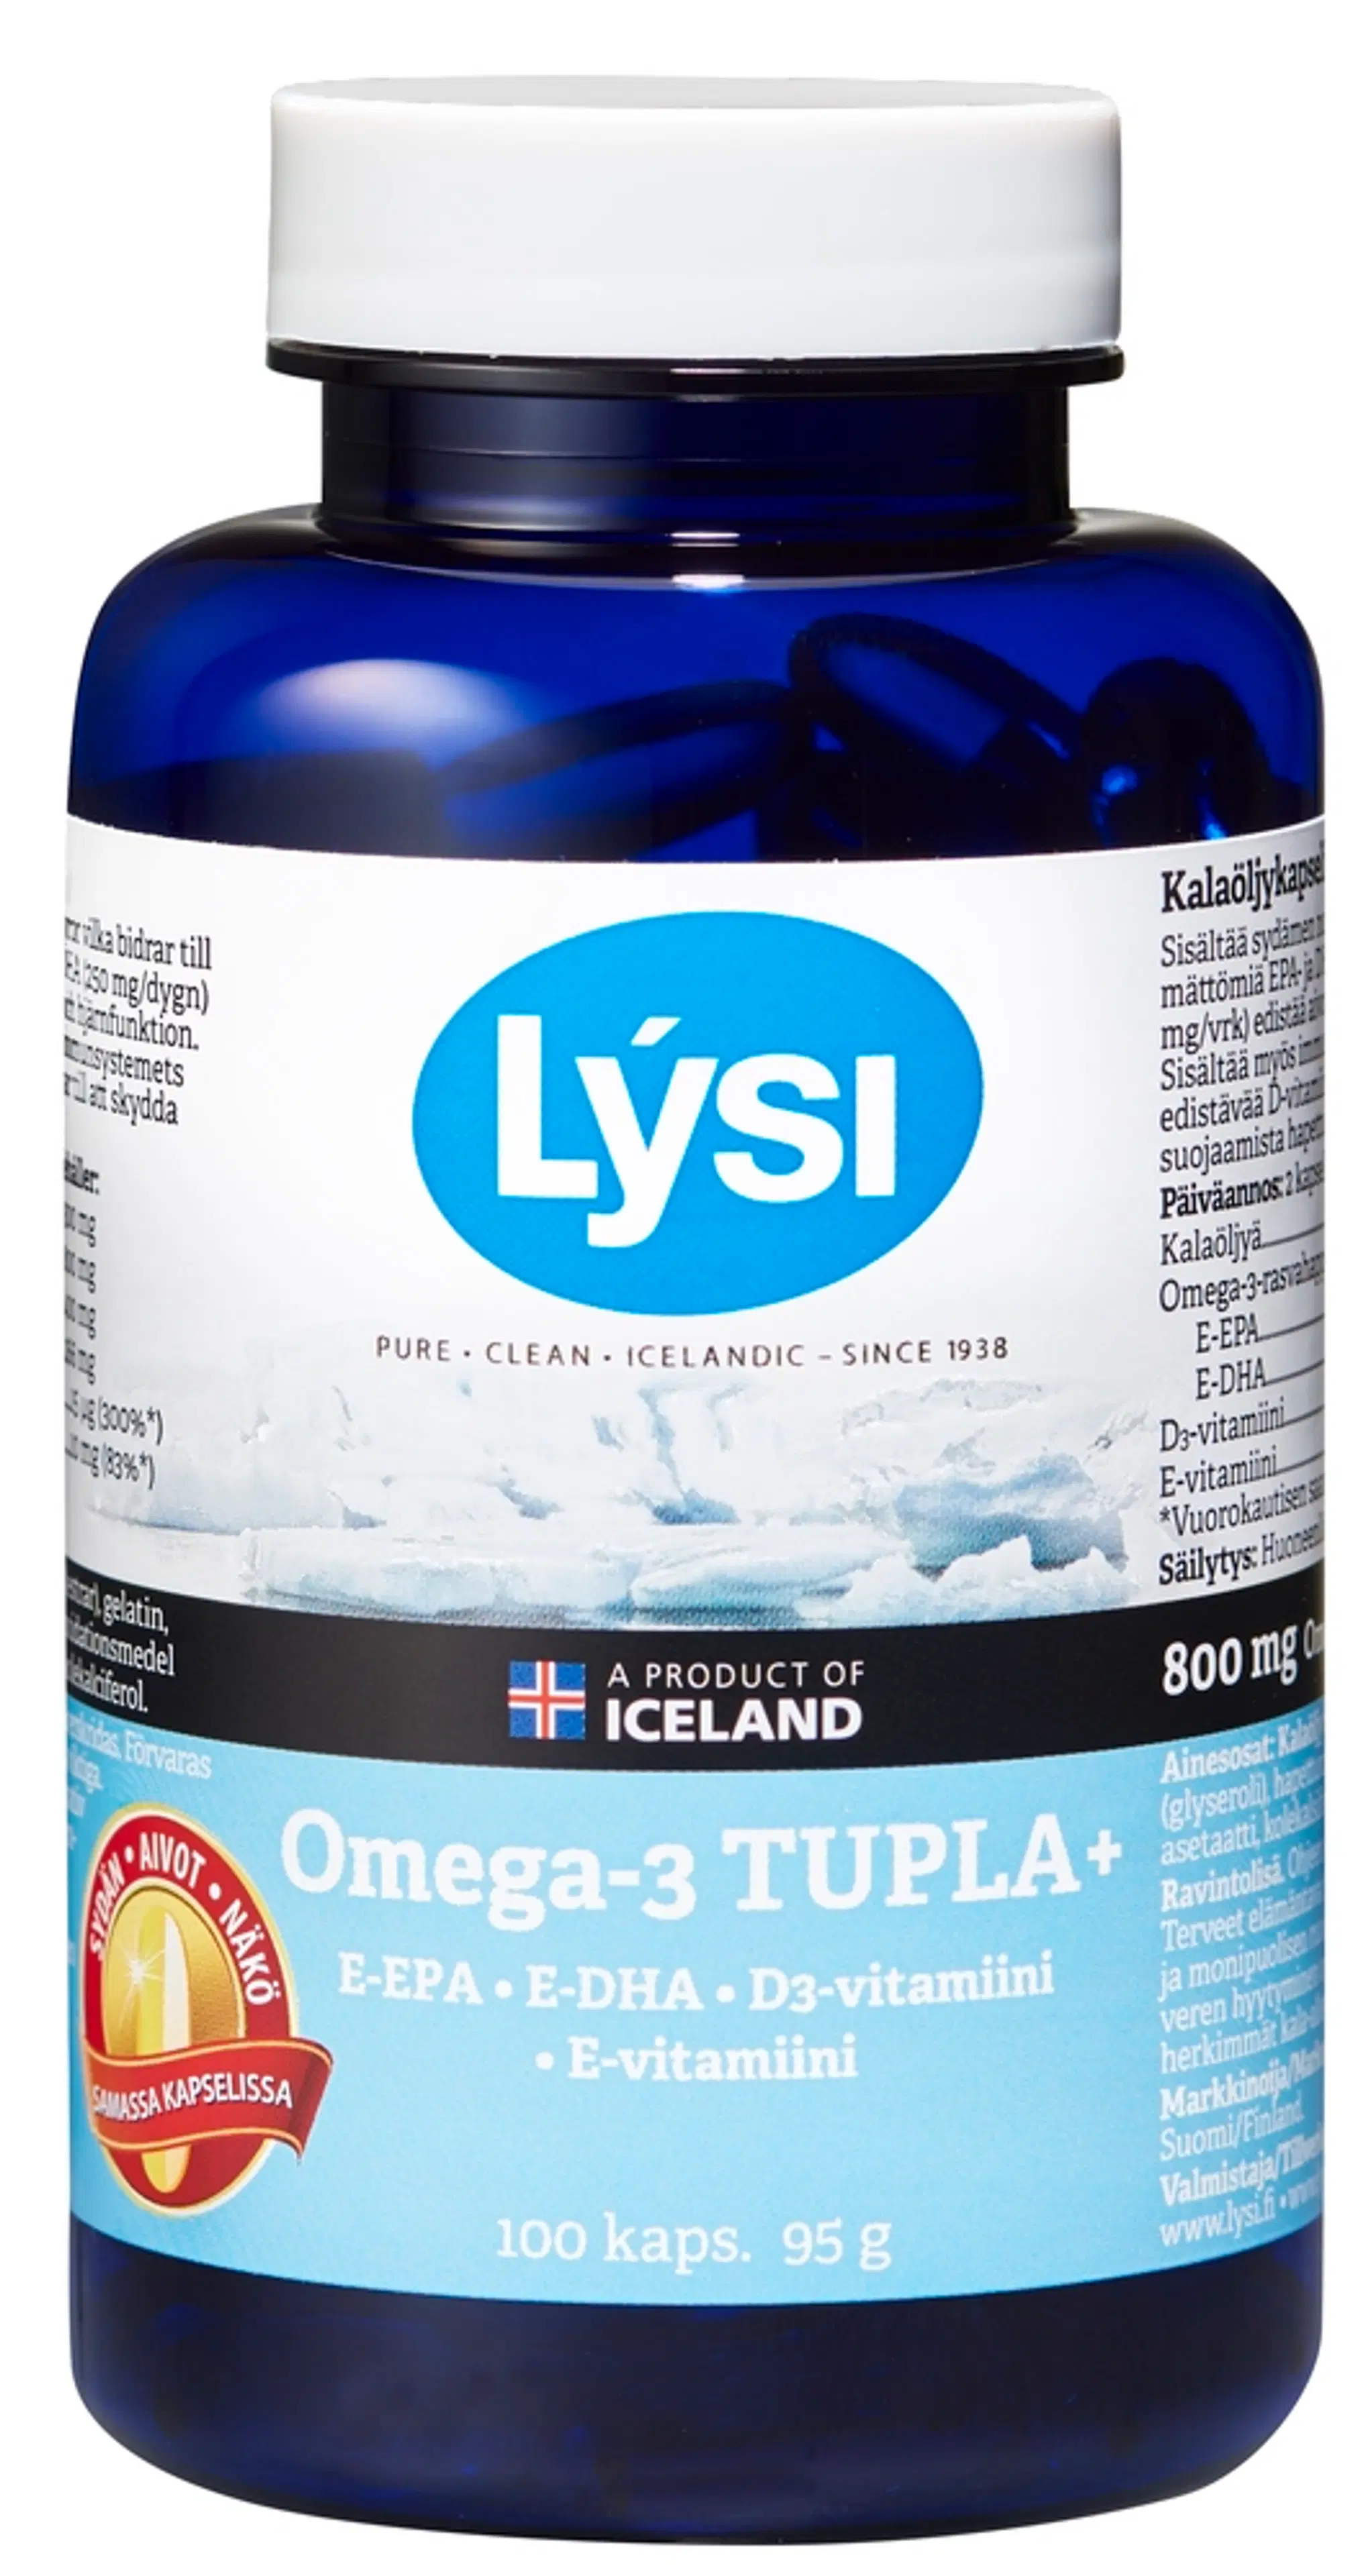 Lysi Omega-3 Tupla+ kalaöljy-vitamiinikapseli 100kaps 95g ravintolisä